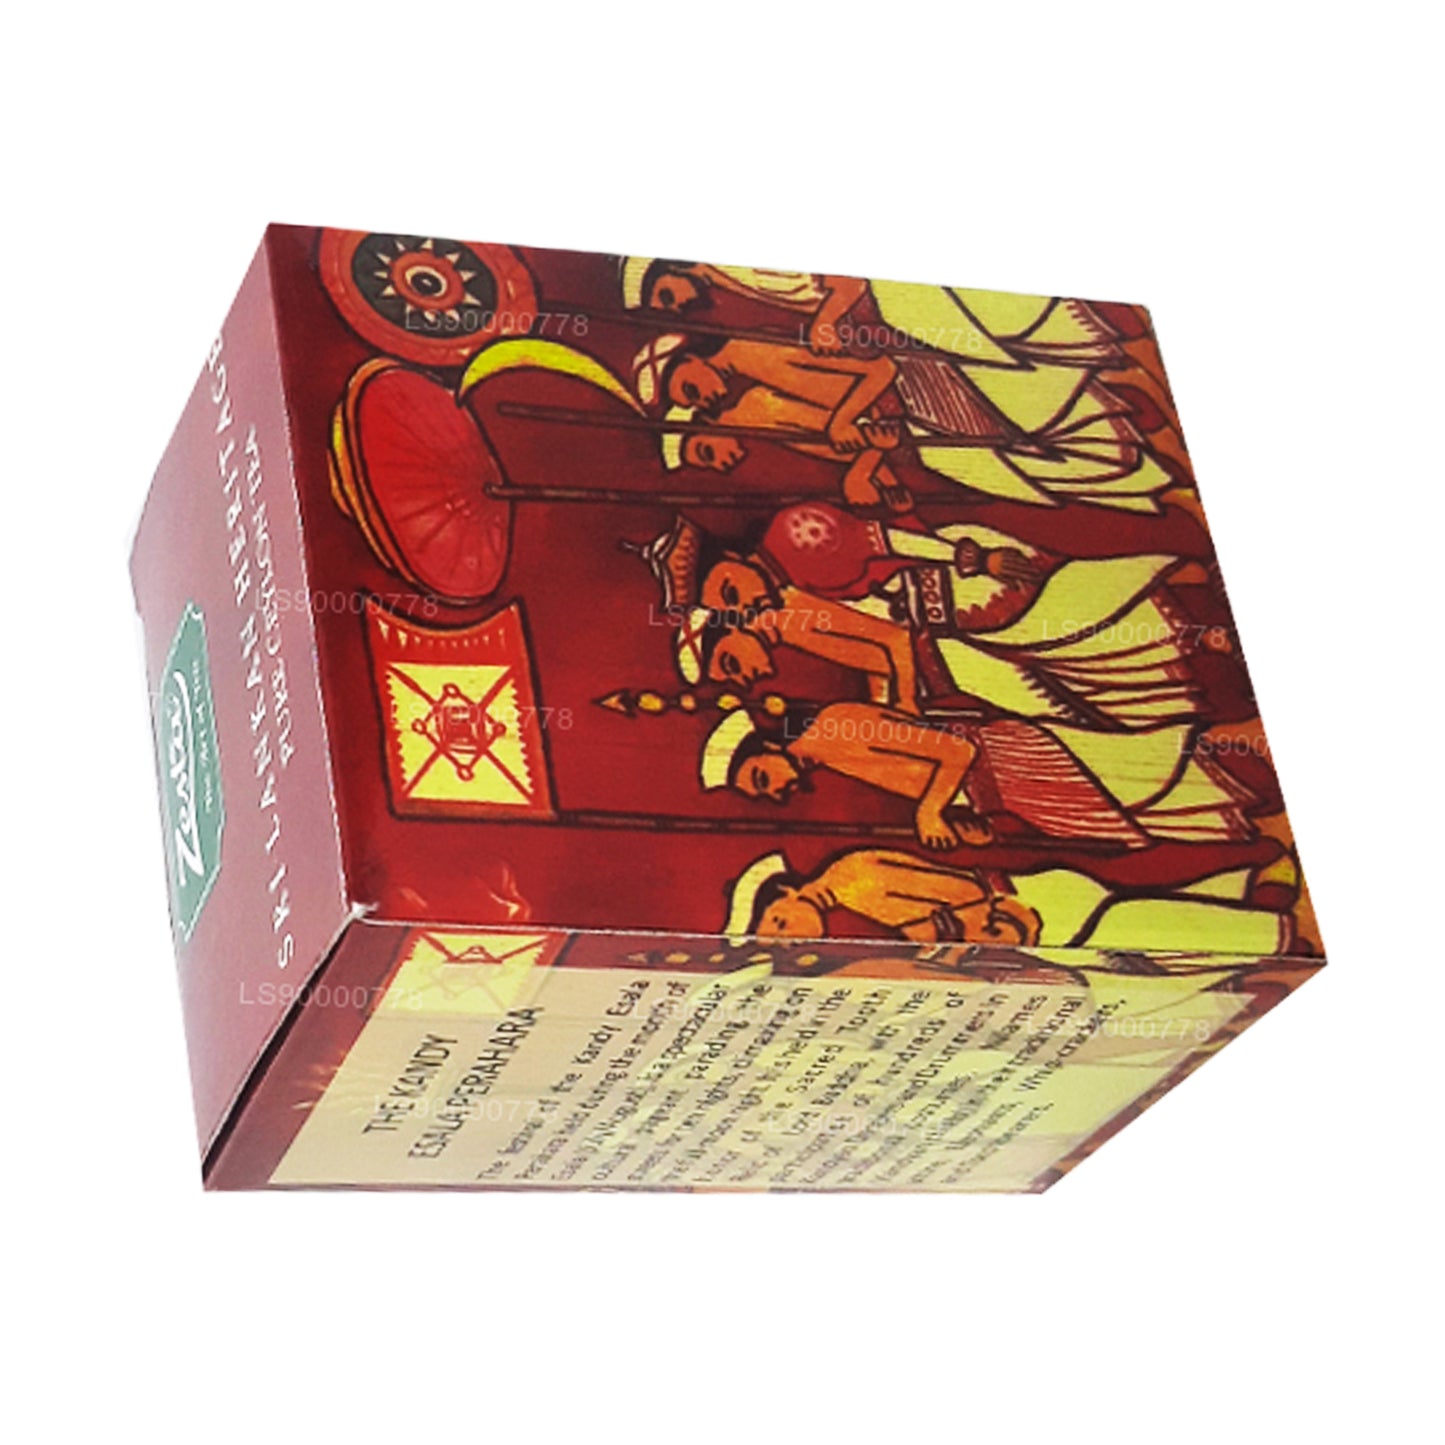 Zesta Sri Lankaanse Heritage Pure Ceylon-thee Kenilworth PEKOE 1 (100 g)